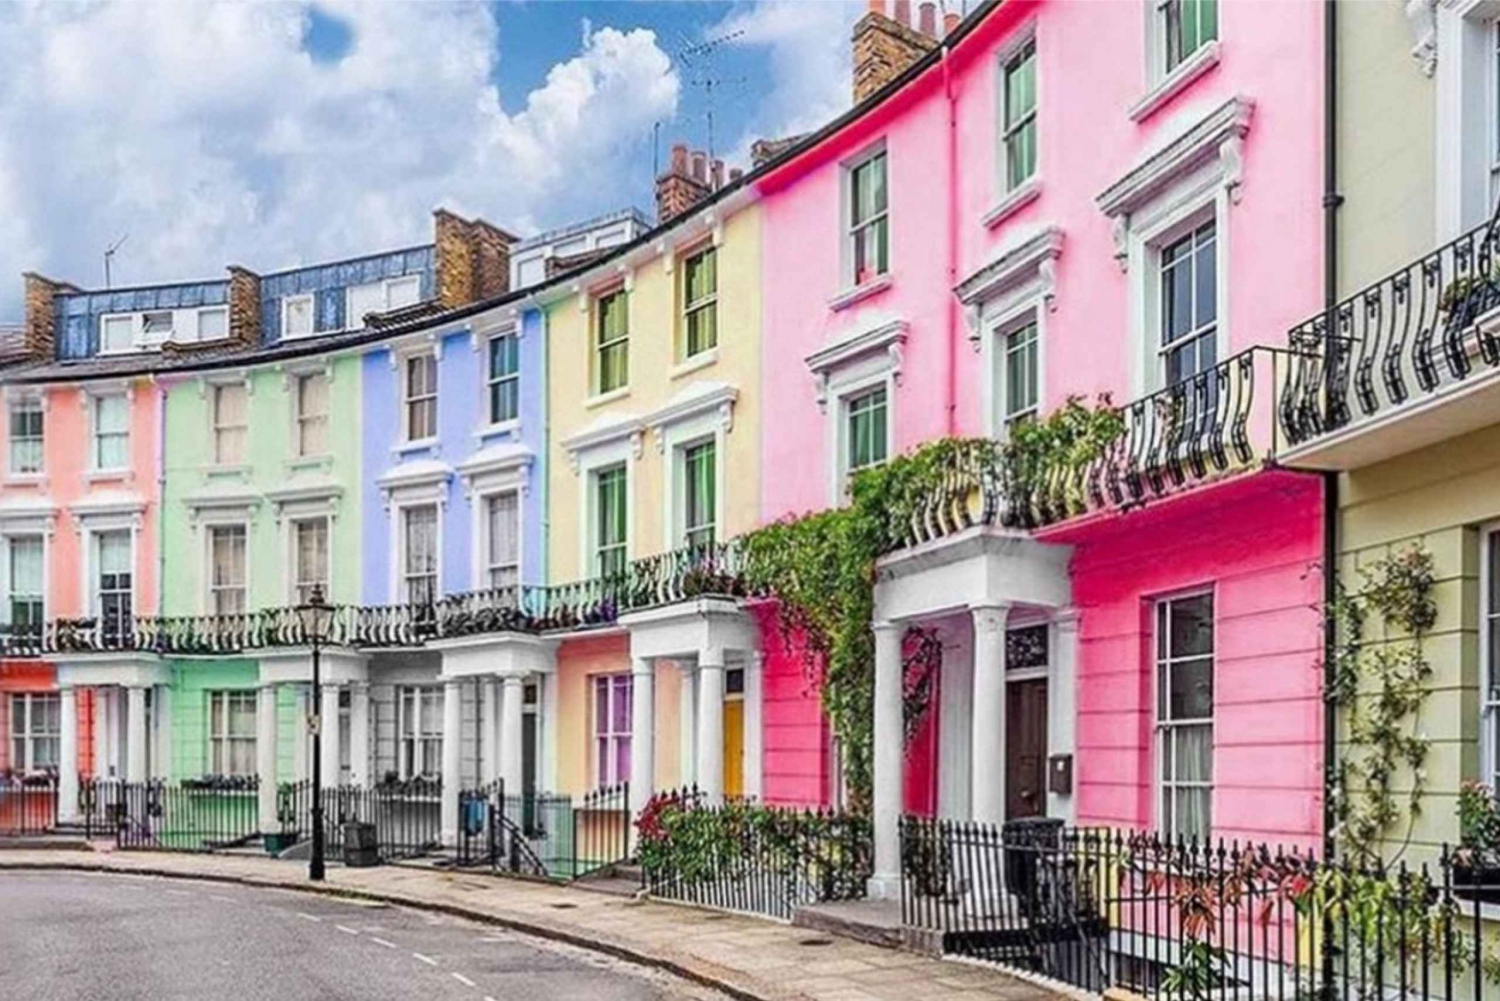 Kolorowa wycieczka fotograficzna po Notting Hill